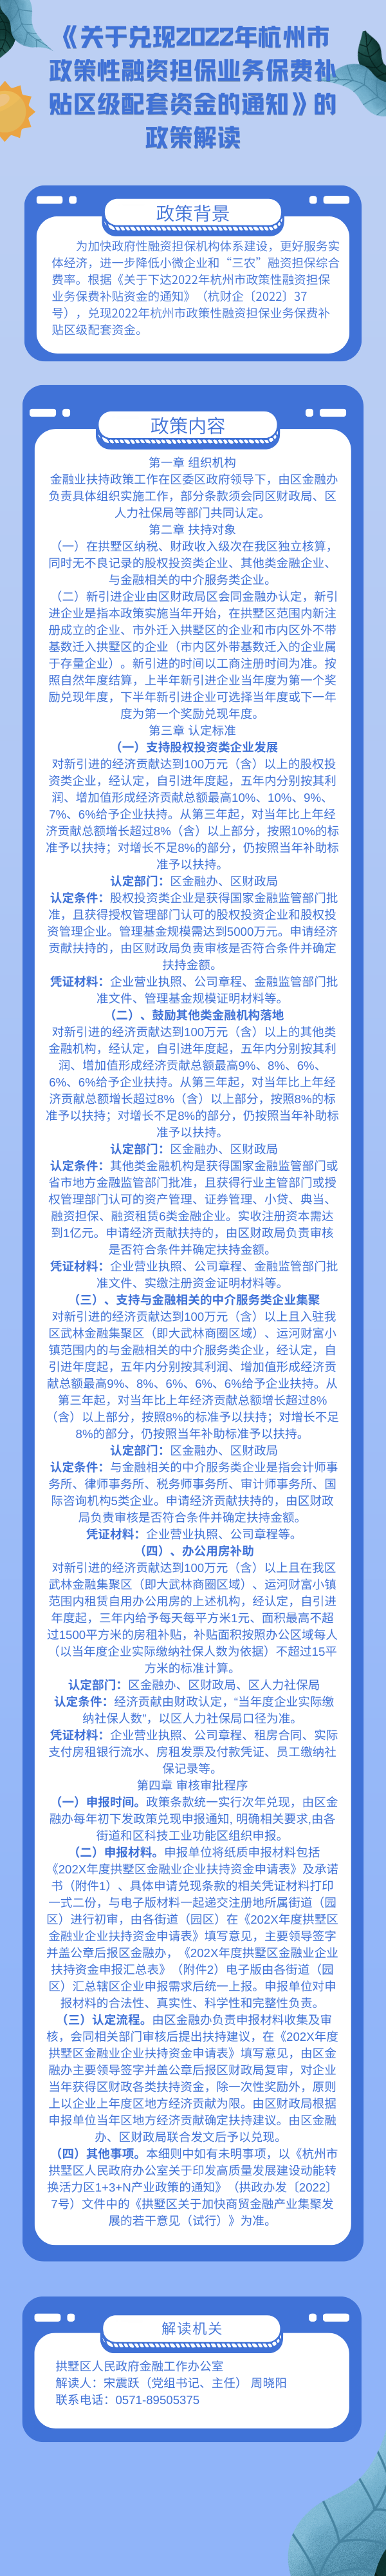 《关于兑现2022年杭州市政策性融资担保业务保费补贴区级配套资金的通知》的政策解读.png